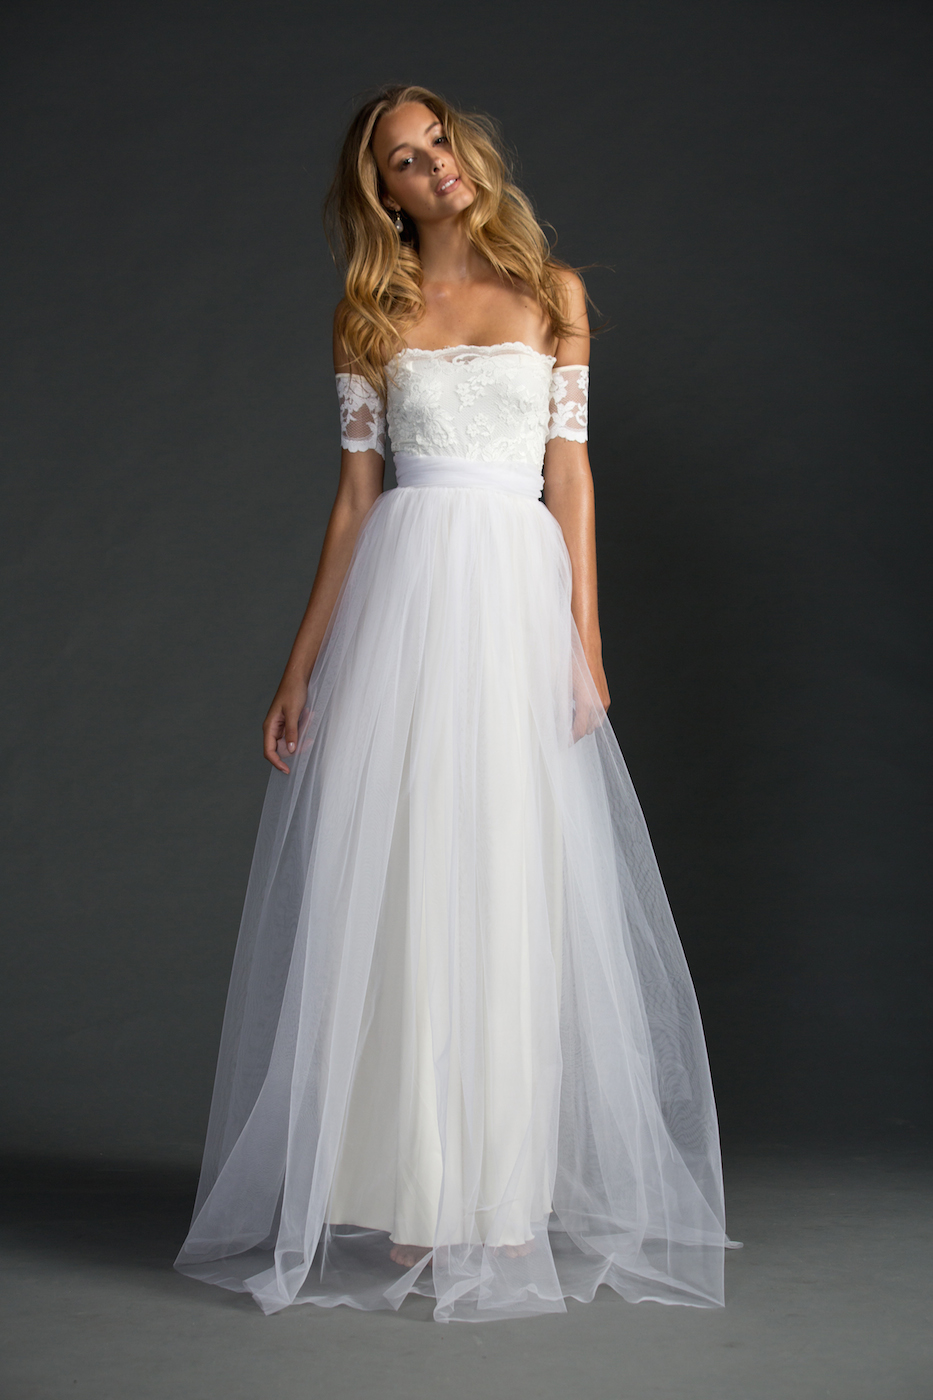 February s Top 5 wedding  Dresses  Under 1000 nouba com 